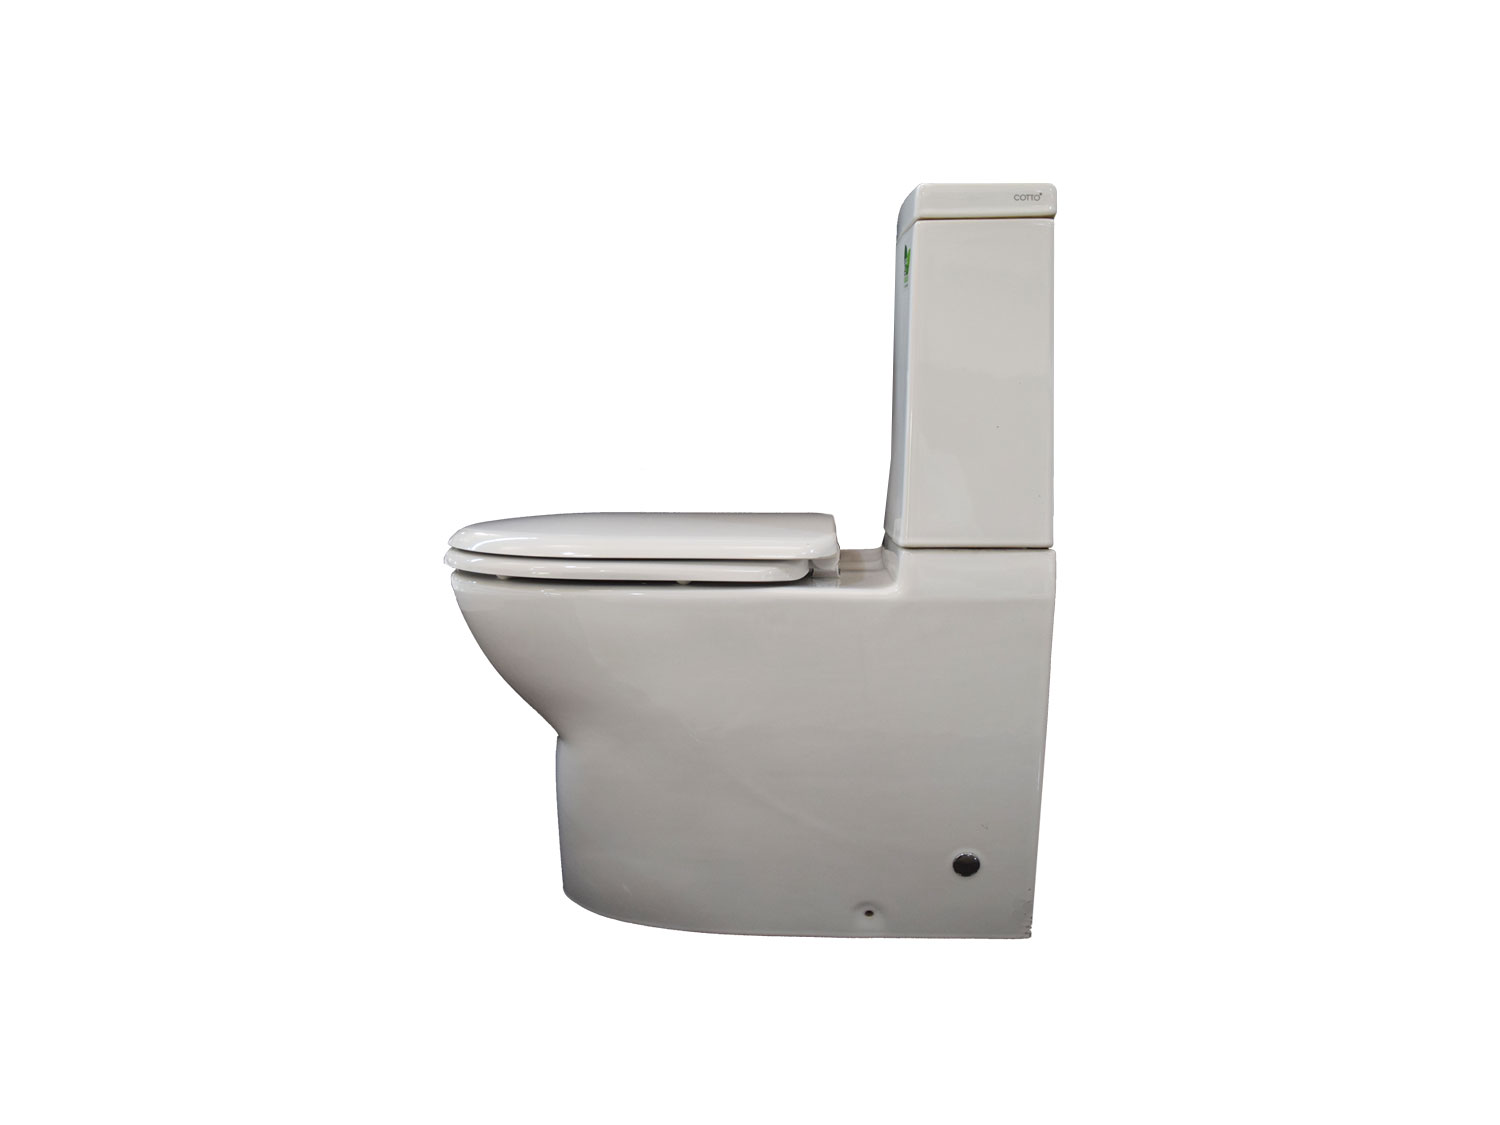 COTTO Proteus II White Toilet Suite